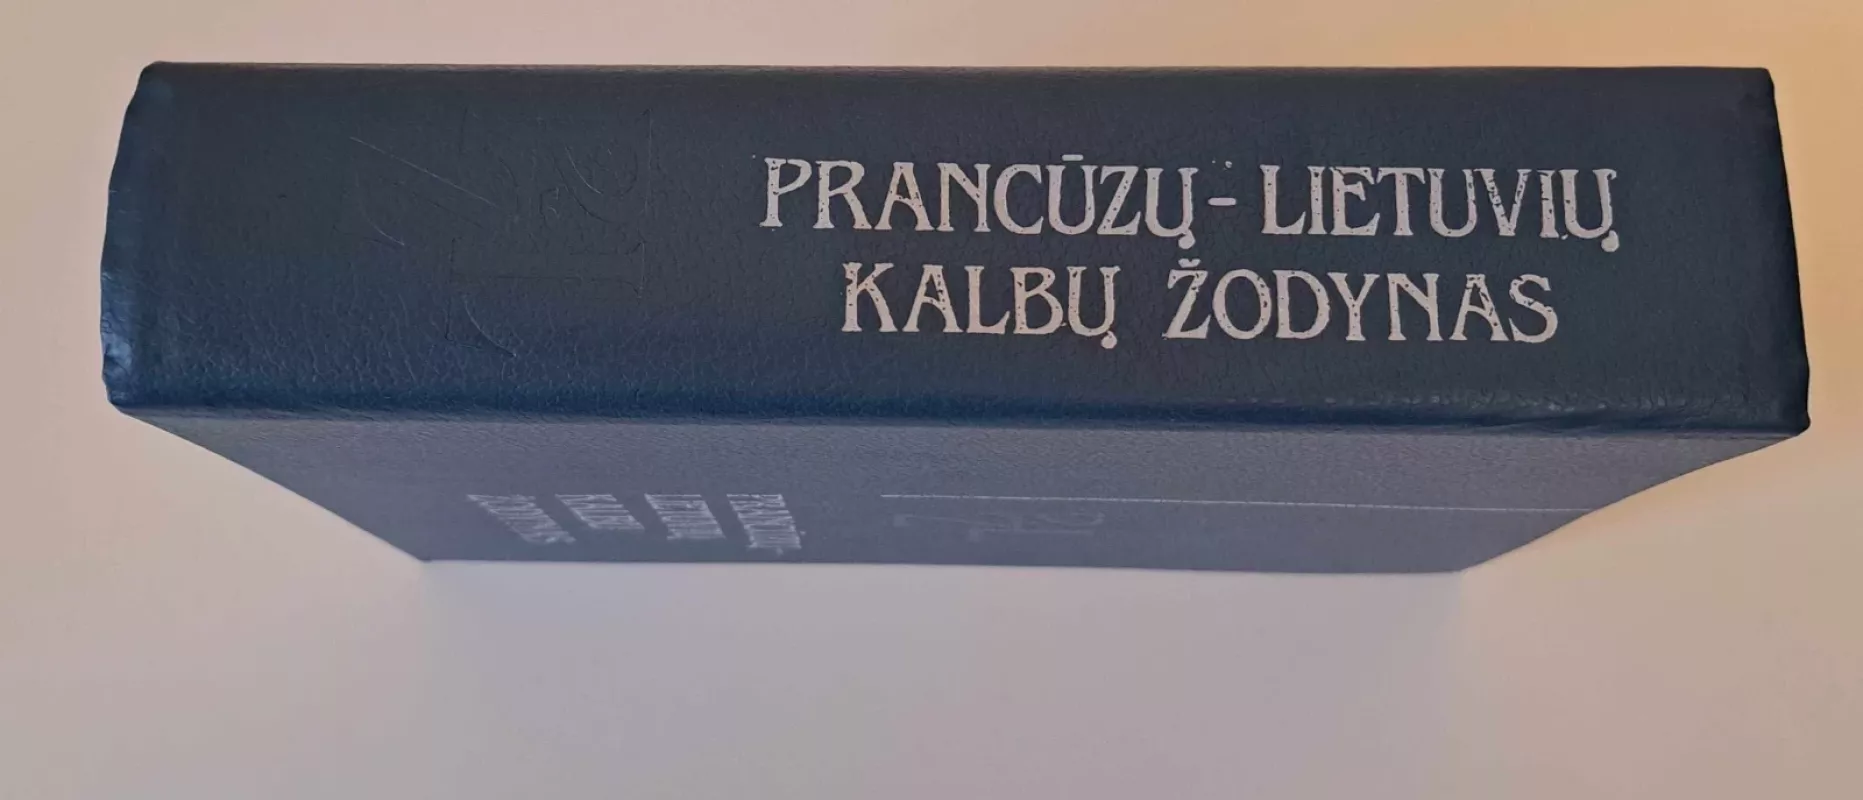 Prancūzų-lietuvių kalbų žodynas - A. Juškienė, M.  Katilienė, K.  Kaziūnienė, knyga 3